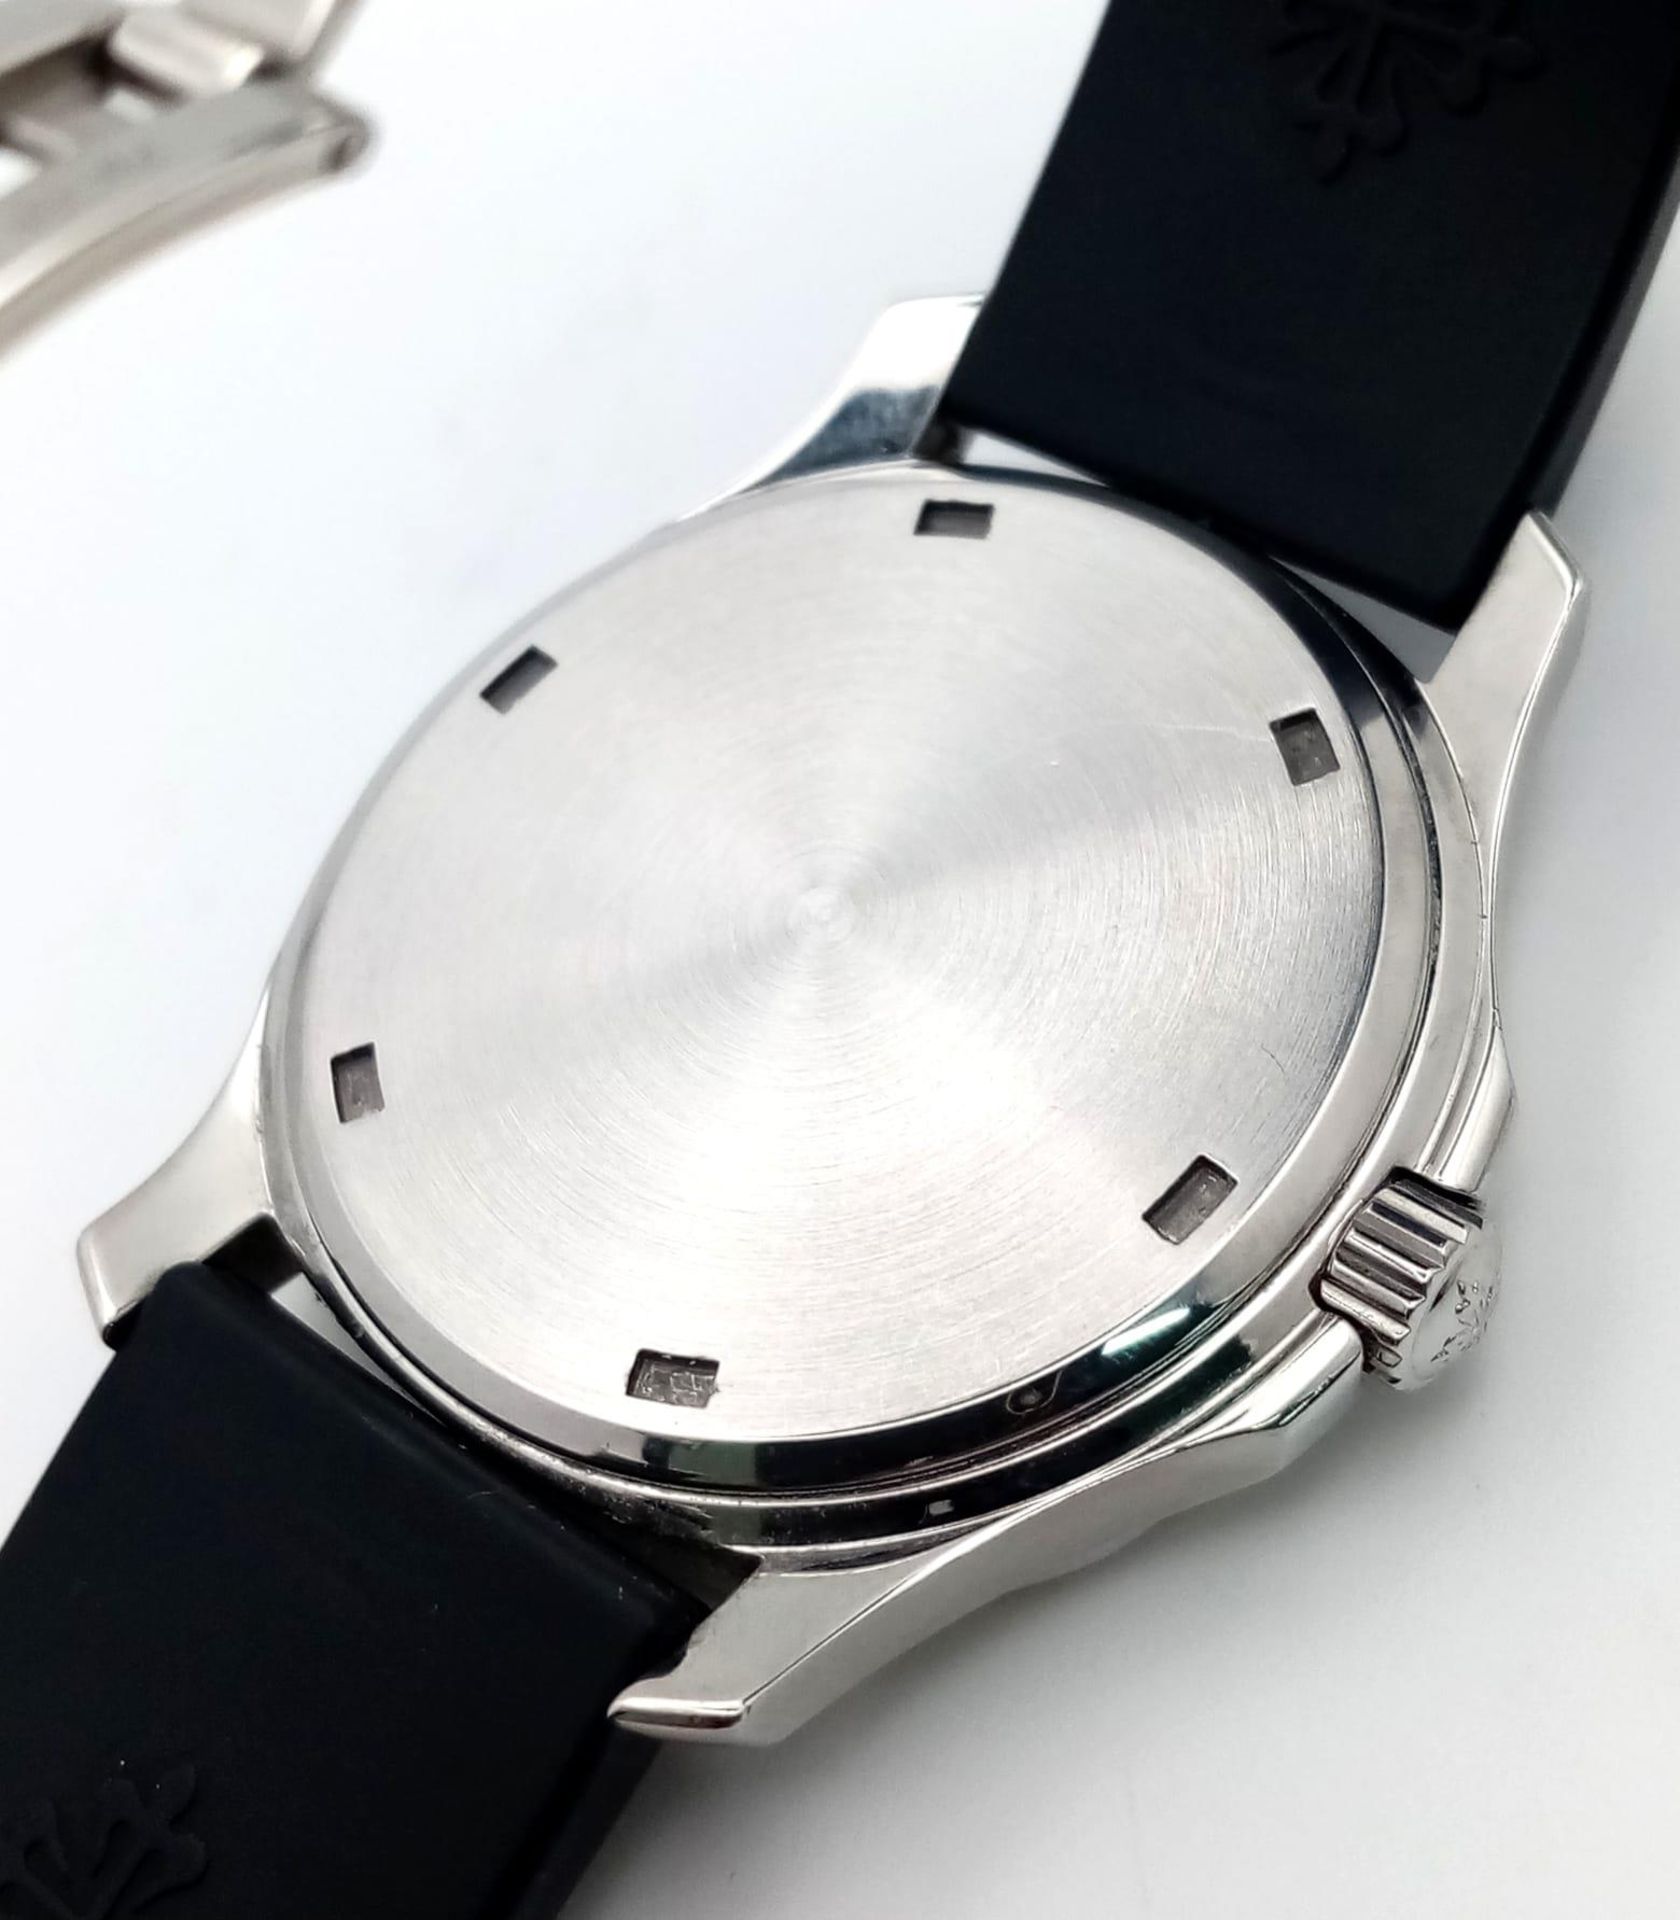 A Patek Phillippe Aquanaut Watch. Textured black rubber strap. Stainless steel case - 36mm. - Bild 6 aus 8